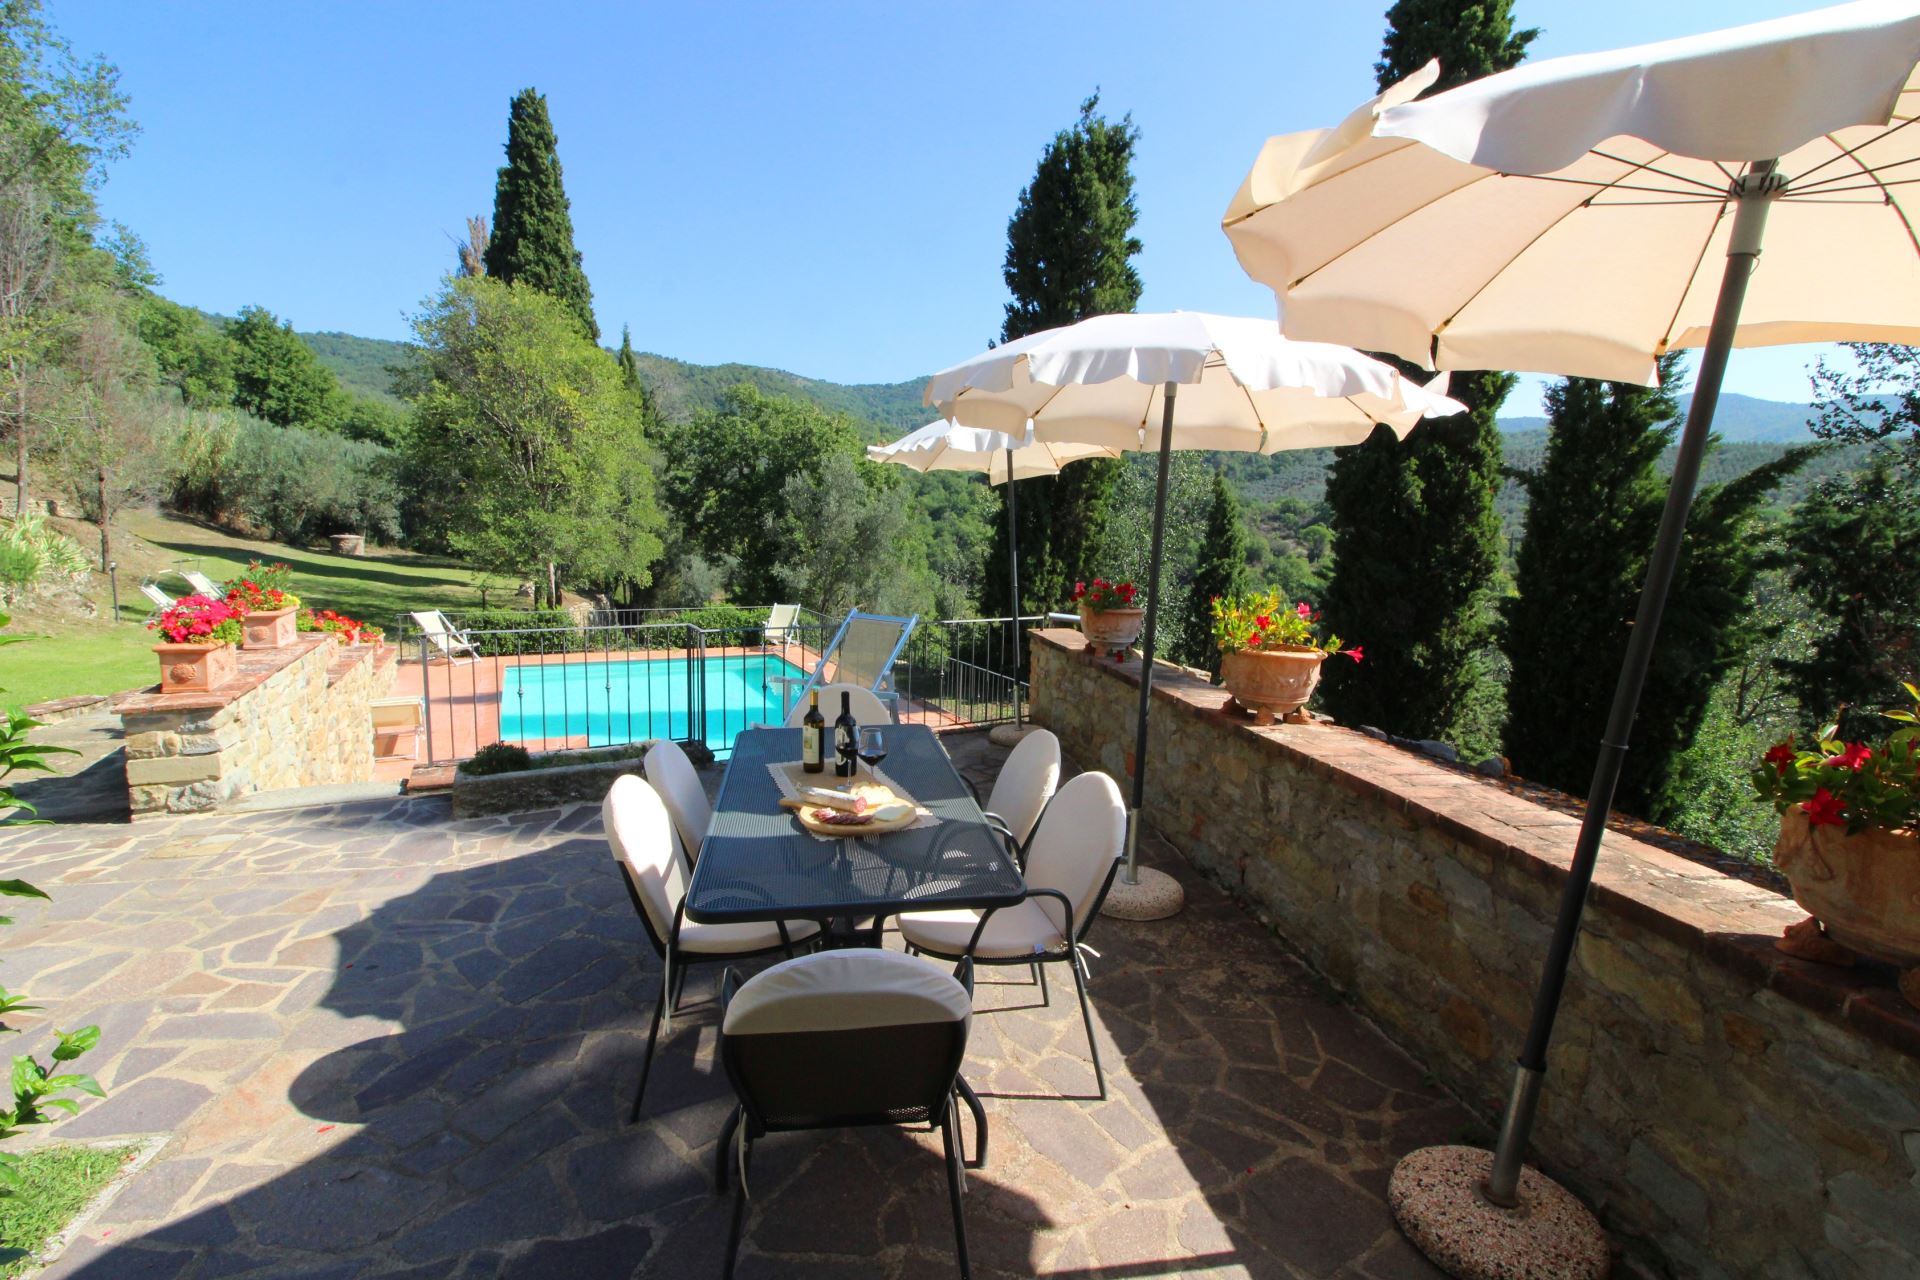 434_b983d9c_Kindvriendelijk vakantiehuis met privé zwembad, Borgo Caprile, Toscane, Cortona, Arezzo, (35).